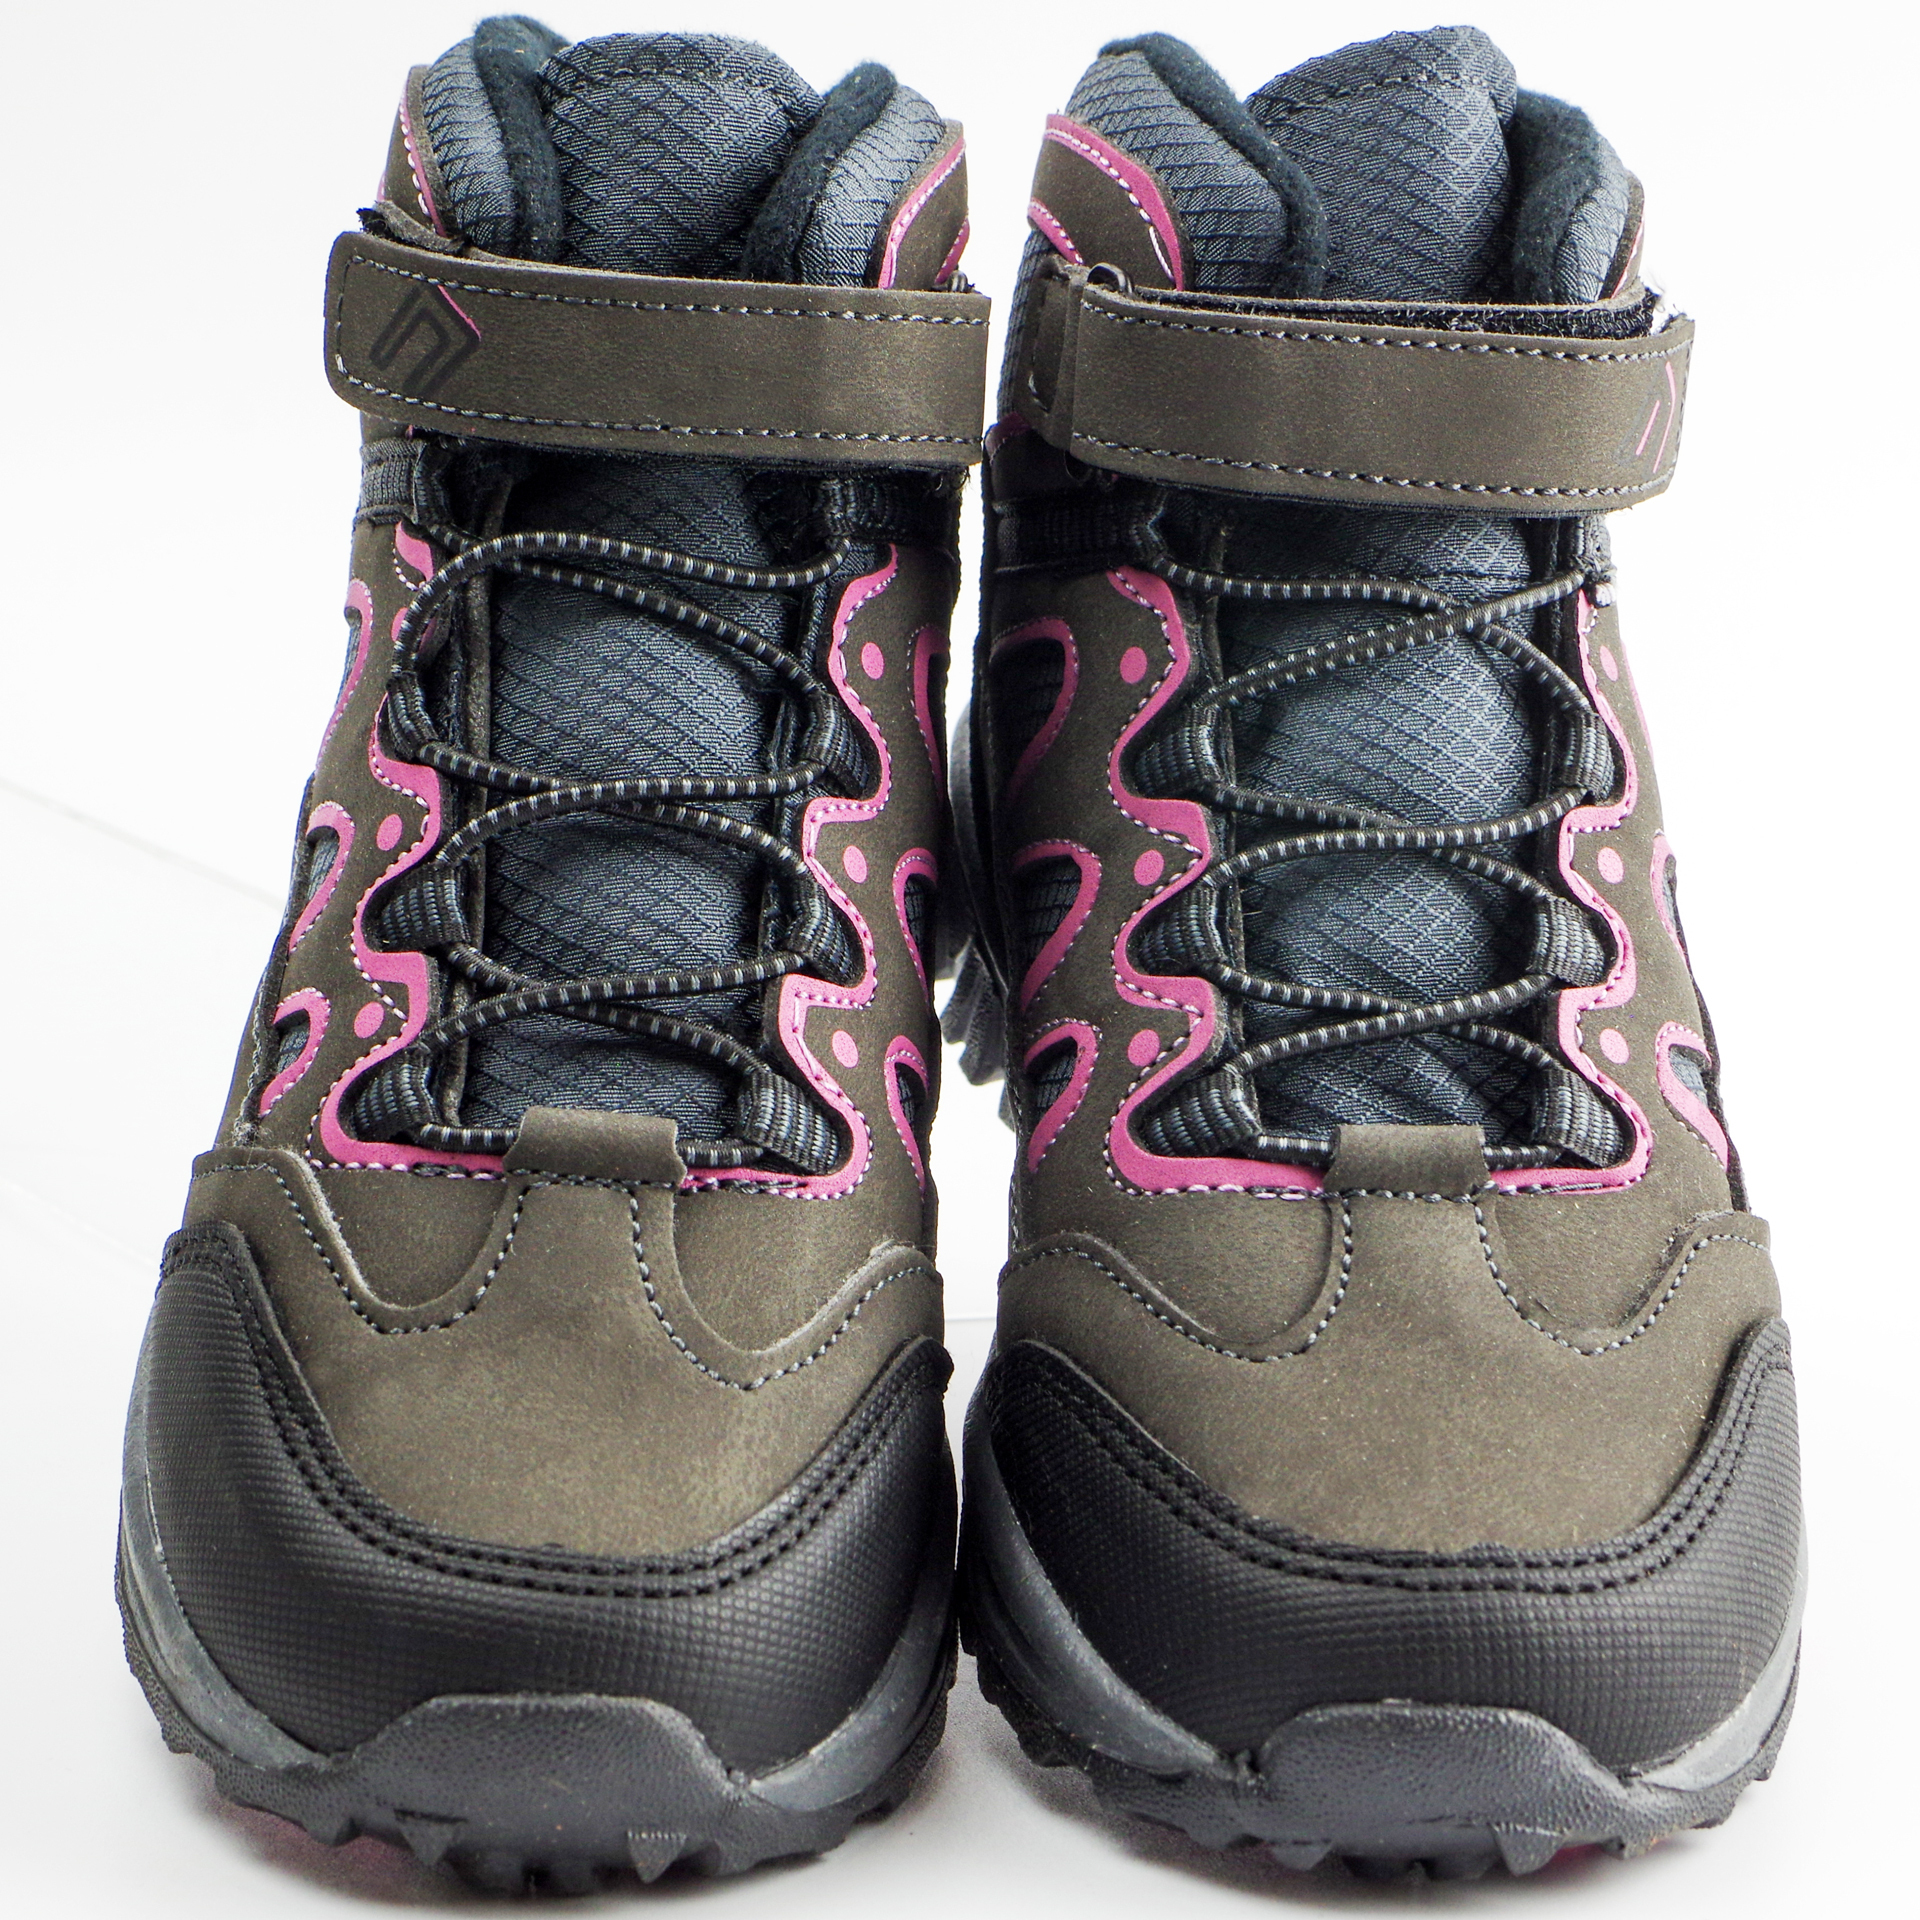 Мембранные ботинки (2179) материал Мембрана, цвет пудра  для девочки 31-35 размеры – Sole Kids. Фото 3